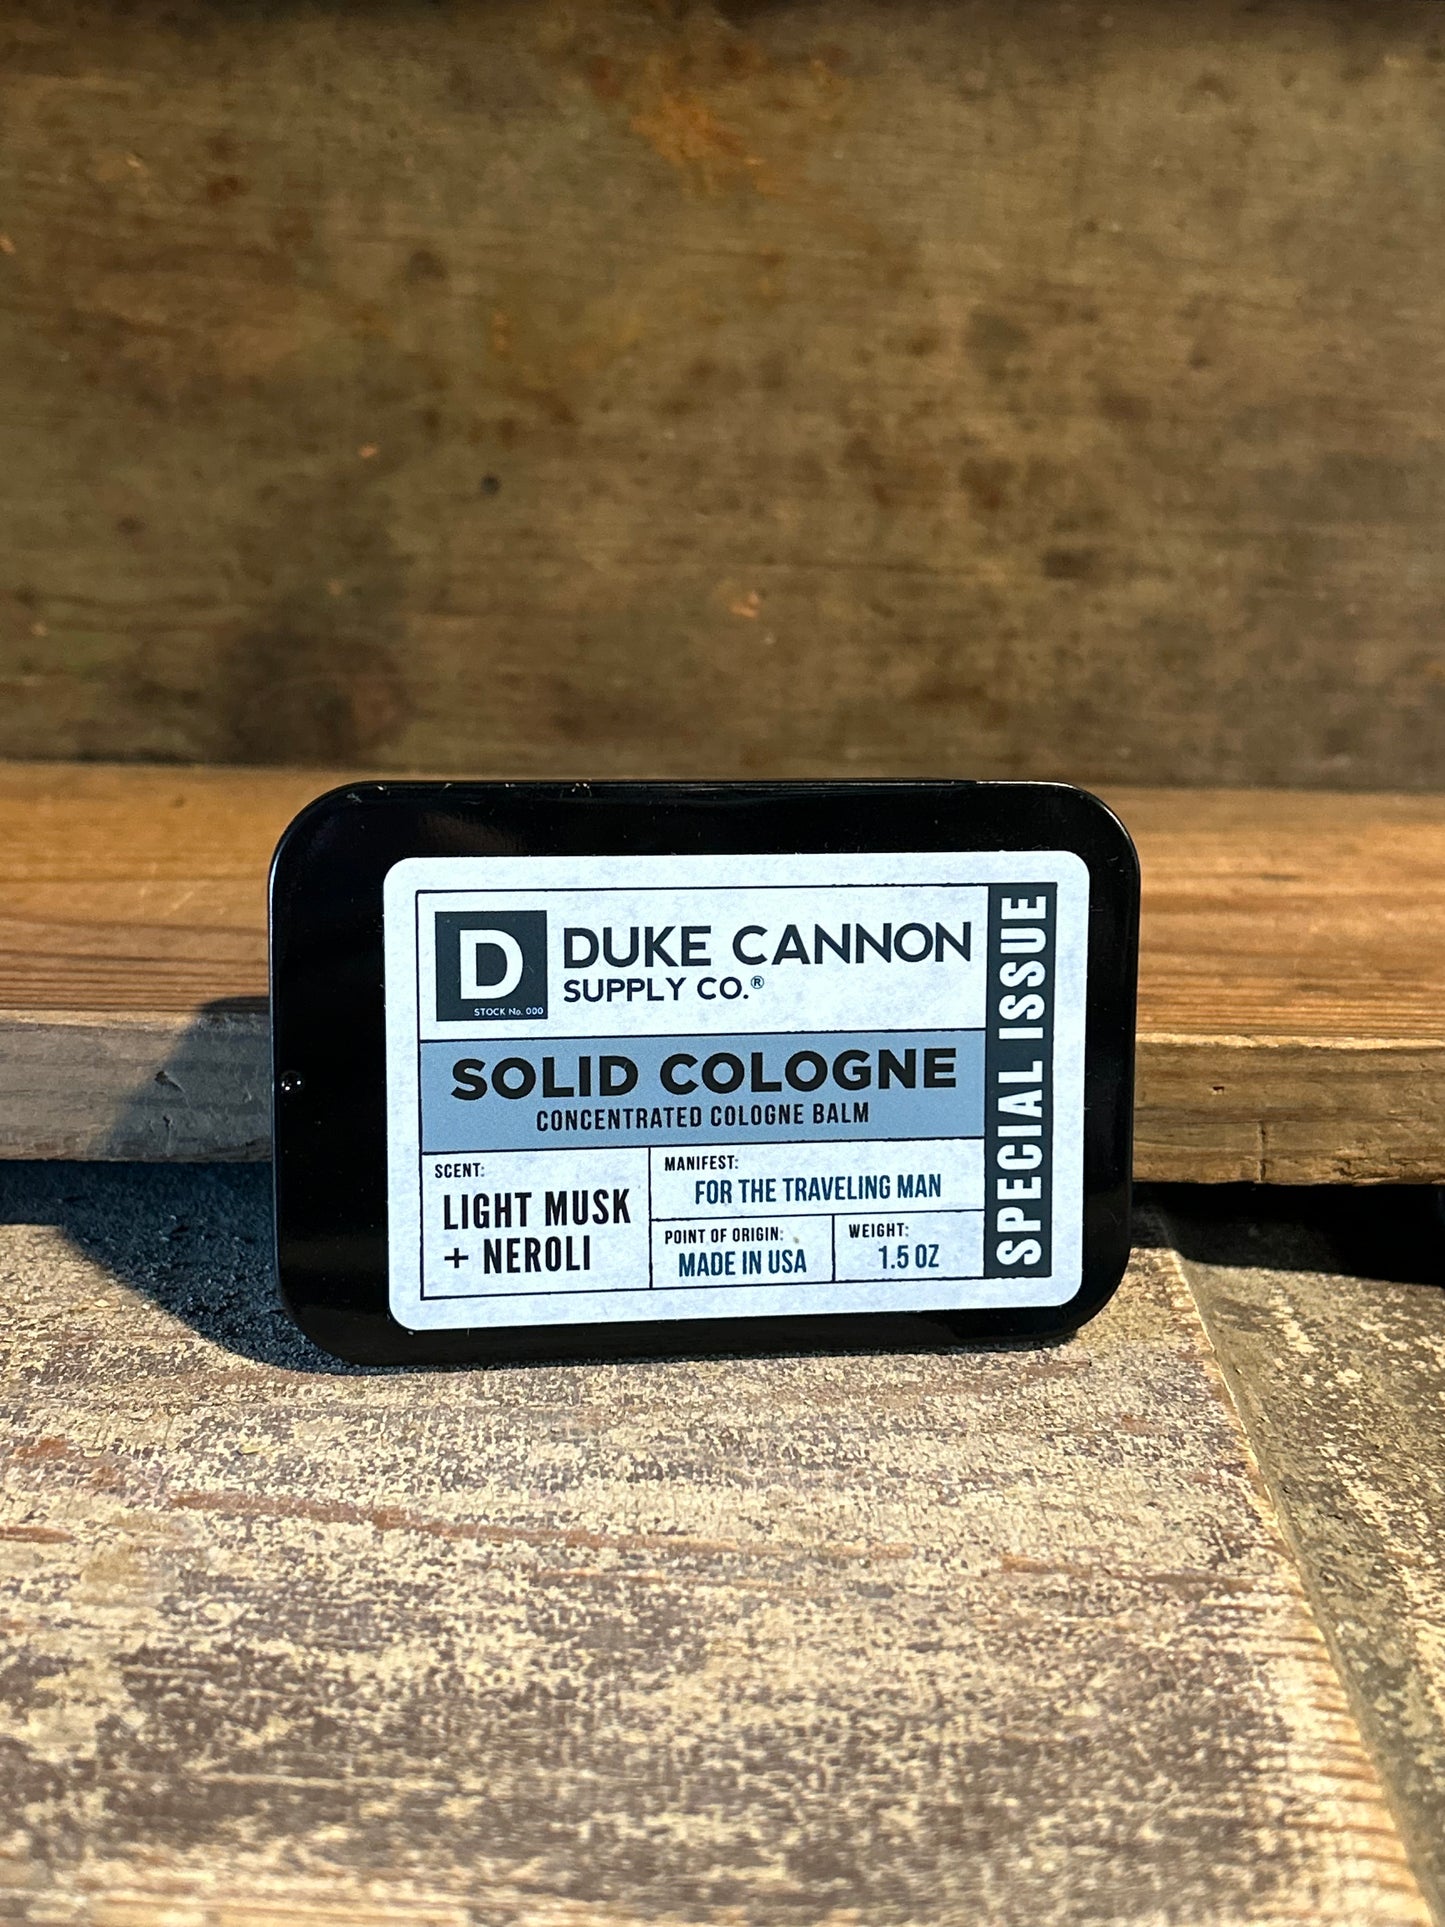 Duke Cannon solid cologne